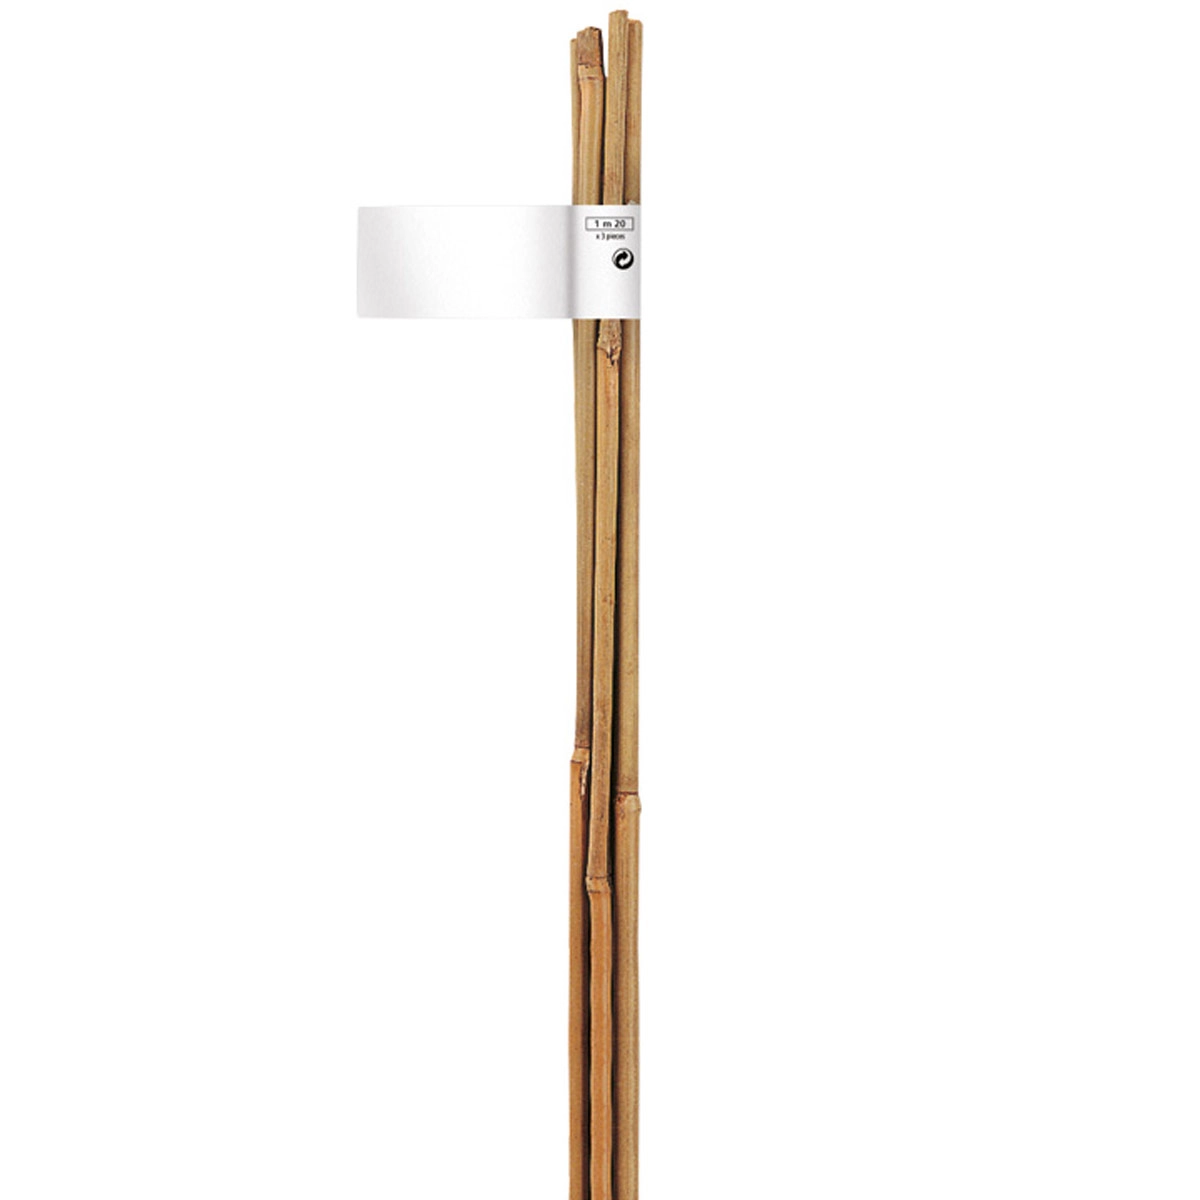 Nortene Bamboo bambusz termesztő karó  (4 db karó / köteg), Ø 8-10 mm x M. 0,90 m